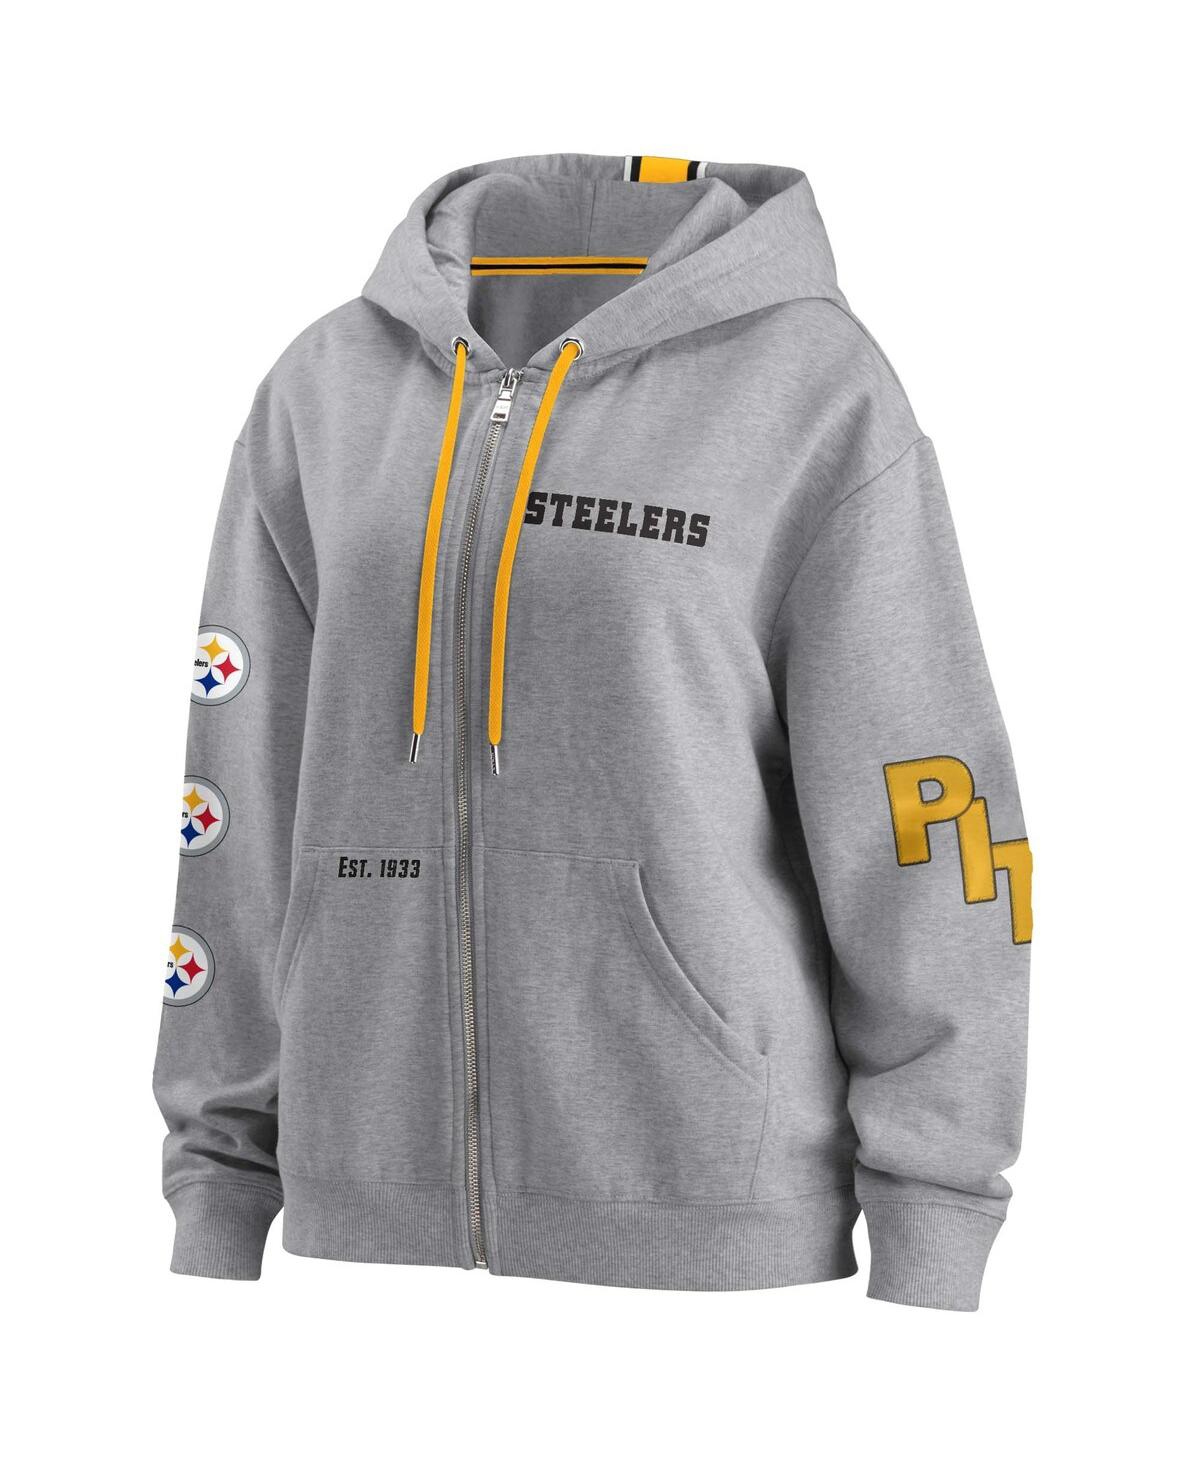 Shop Wear By Erin Andrews Women's  Gray Pittsburgh Steelers Full-zip Hoodie